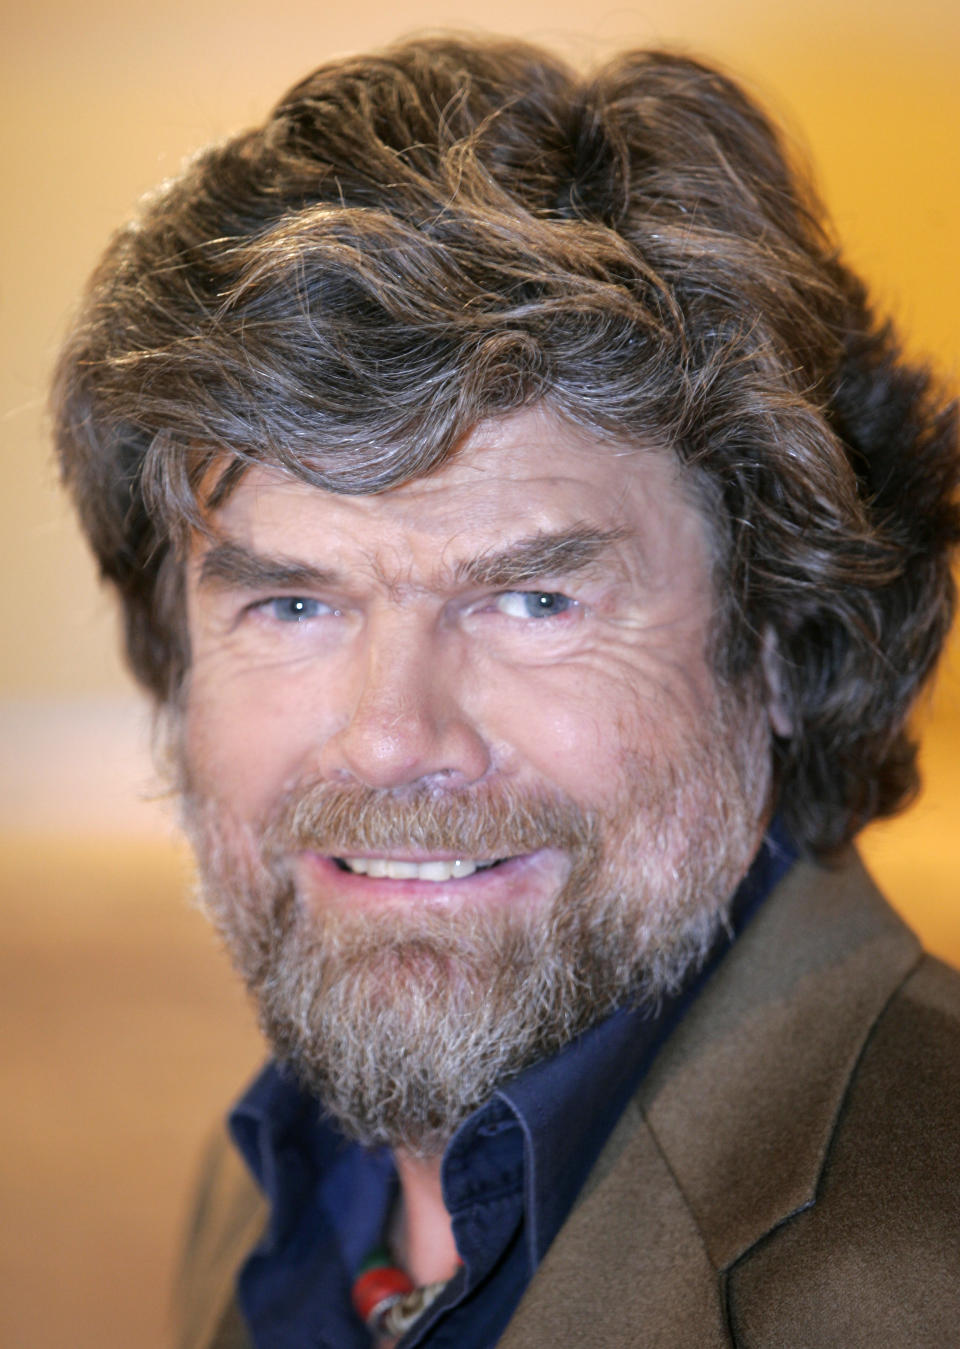 Während seiner Antarktis-Durchquerung bereitete Reinhold Messner vor allem der Wind große Schwierigkeiten. (Foto: AP Photo/Roberto Pfeil)